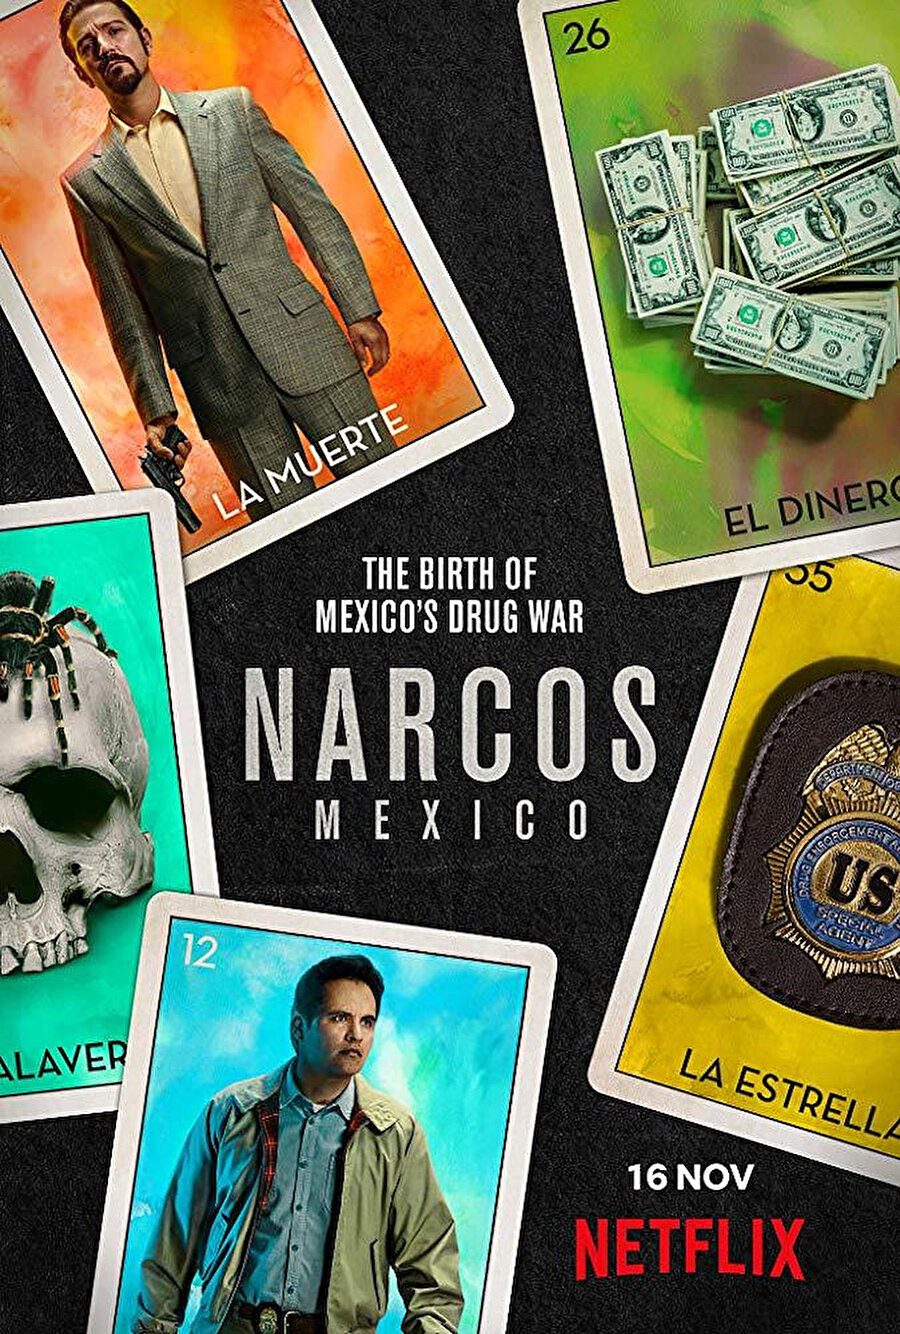 Kolombiyalı efsane suç ve uyuşturucu baronu Pablo Escobar’ın hayatını konu alan Narcos, son yılların en çok izlenen dizilerinden olmuştu. Netflix’te yeni gösterime giren Narcos Mexico ise bu kez kartelin Meksika ayağını konu alıyor. Dizide, Meksika’nın 1989’da kurulan en büyük uyuşturucu karteli Sinaloa’nın ordu baskınıyla dağıtılması üzerine, hırslı bir kenevir çiftçisinin Guadalajara’da bir uyuşturucu imparatorluğu kurma mücadelesiyle doğan Guadalajara Karteli’nin gerçek öyküsü ve ülkede süregelen kartel savaşları anlatılıyor.